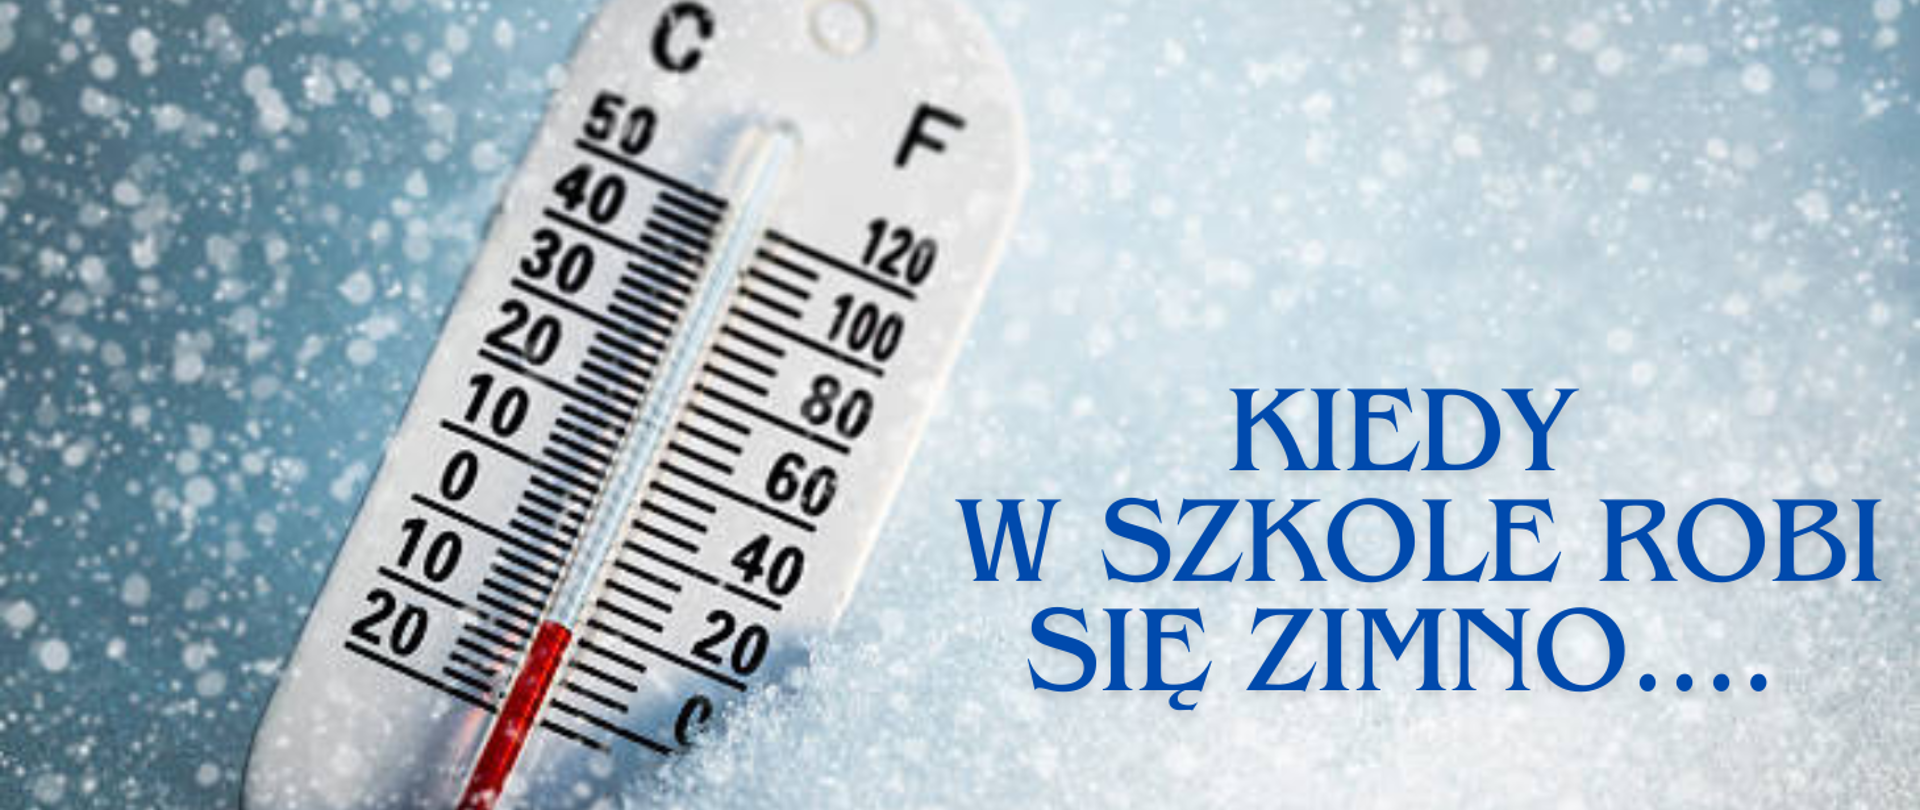 z lewej strony obrazka znajduje się biały termometr z czerwonym słupkiem, a z prawej strony obrazka niebieski napis: ”Kiedy w szkole robi się zimno …”. Tło obrazka jest biało – niebieskie z płatkami śniegu.